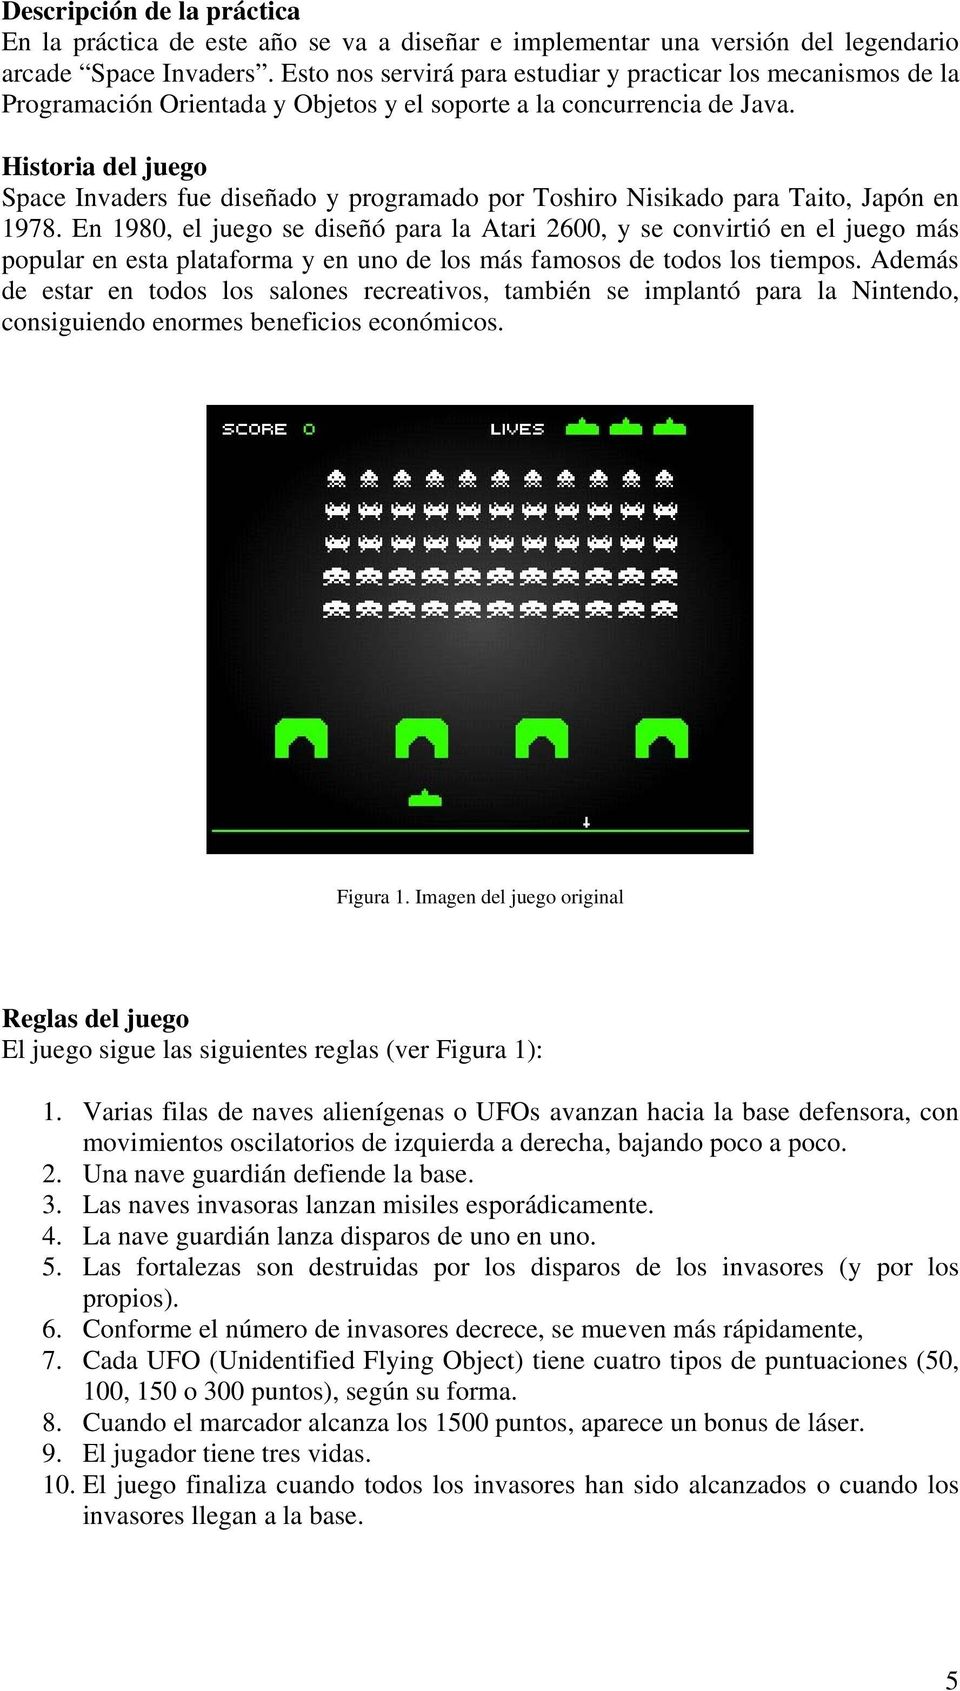 Historia del juego Space Invaders fue diseñado y programado por Toshiro Nisikado para Taito, Japón en 1978.